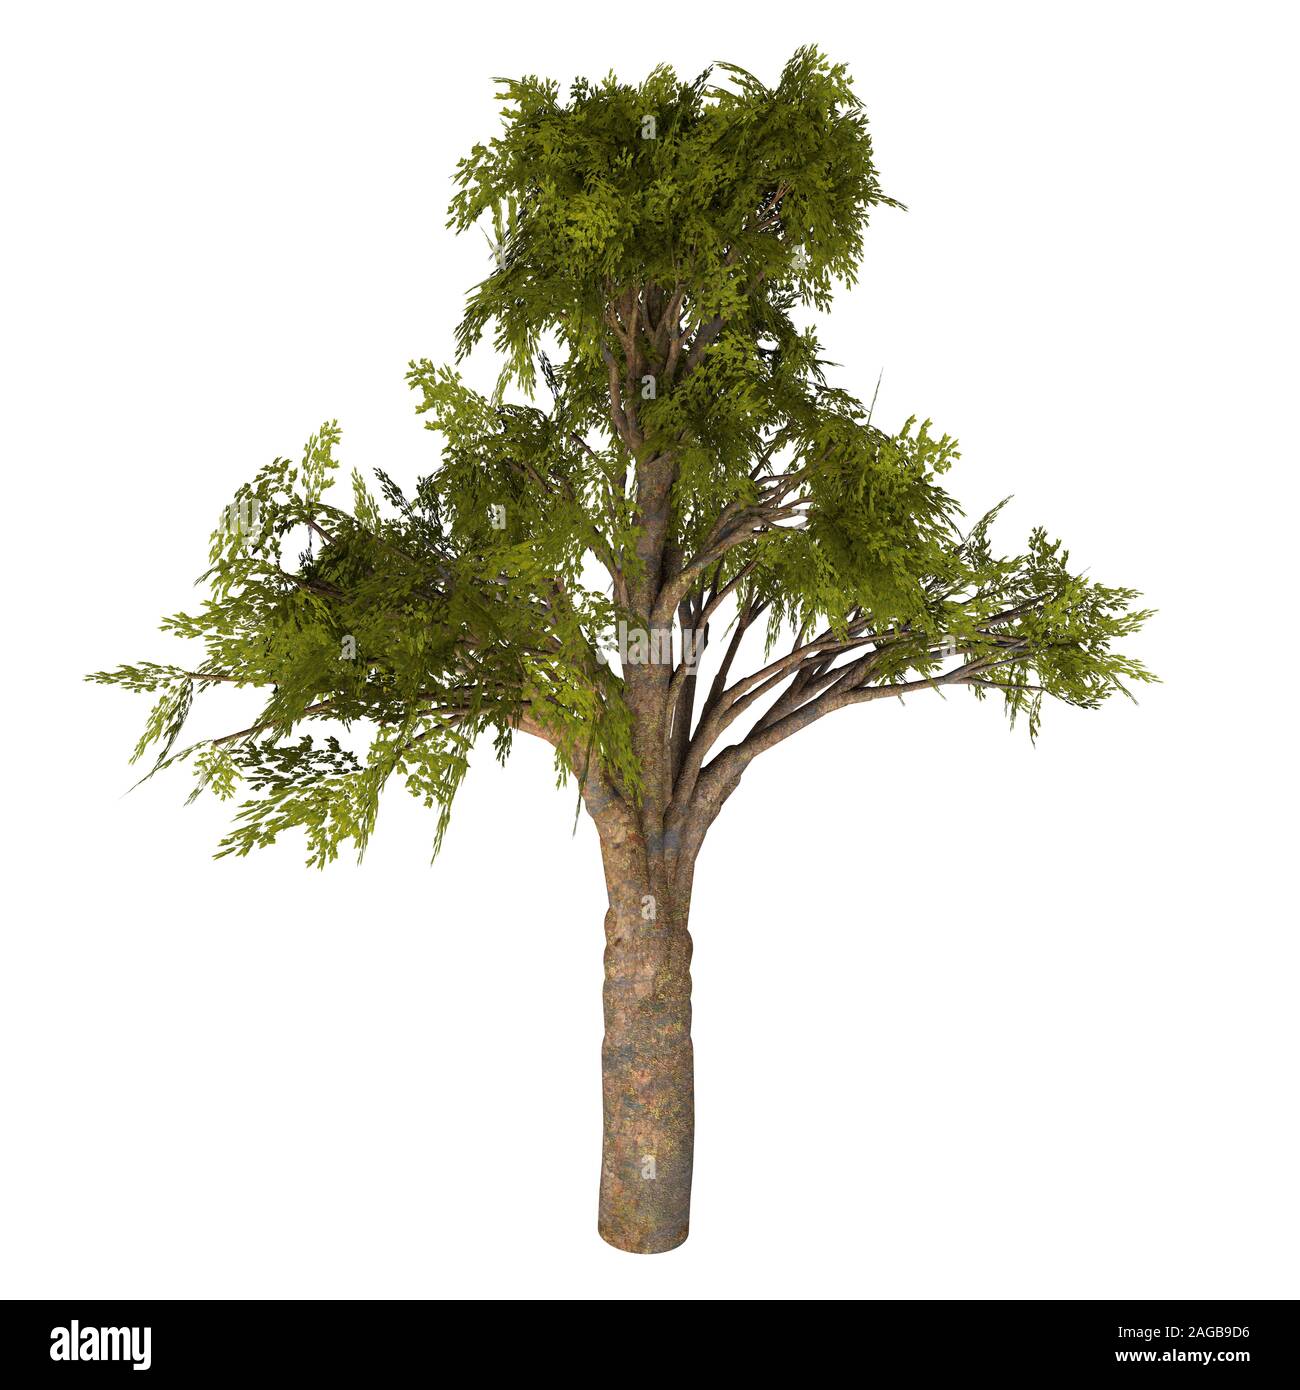 Árbol Kauri Malayo -Agathis coníferas es un árbol siempreverde nativo de Australia y Nueva Zelandia y se remontan a los períodos Jurásico y Cretácico. Foto de stock